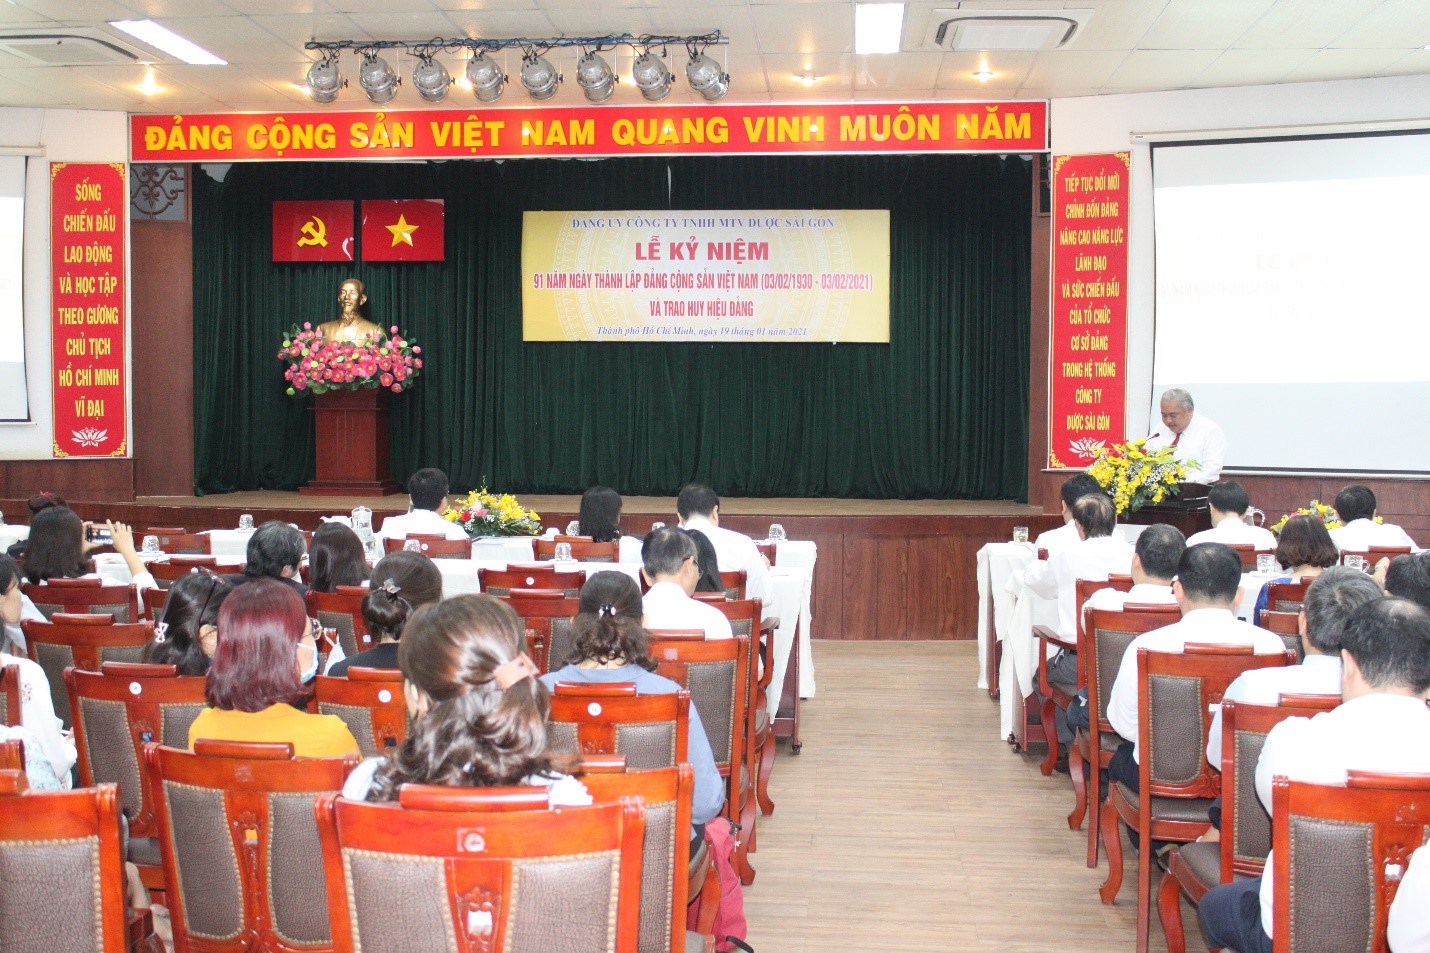 Lễ Kỷ niệm 91 năm Ngày thành lập Đảng Cộng sản Việt Nam (3/2/1930- 3/2/2021) và Trao huy hiệu Đảng